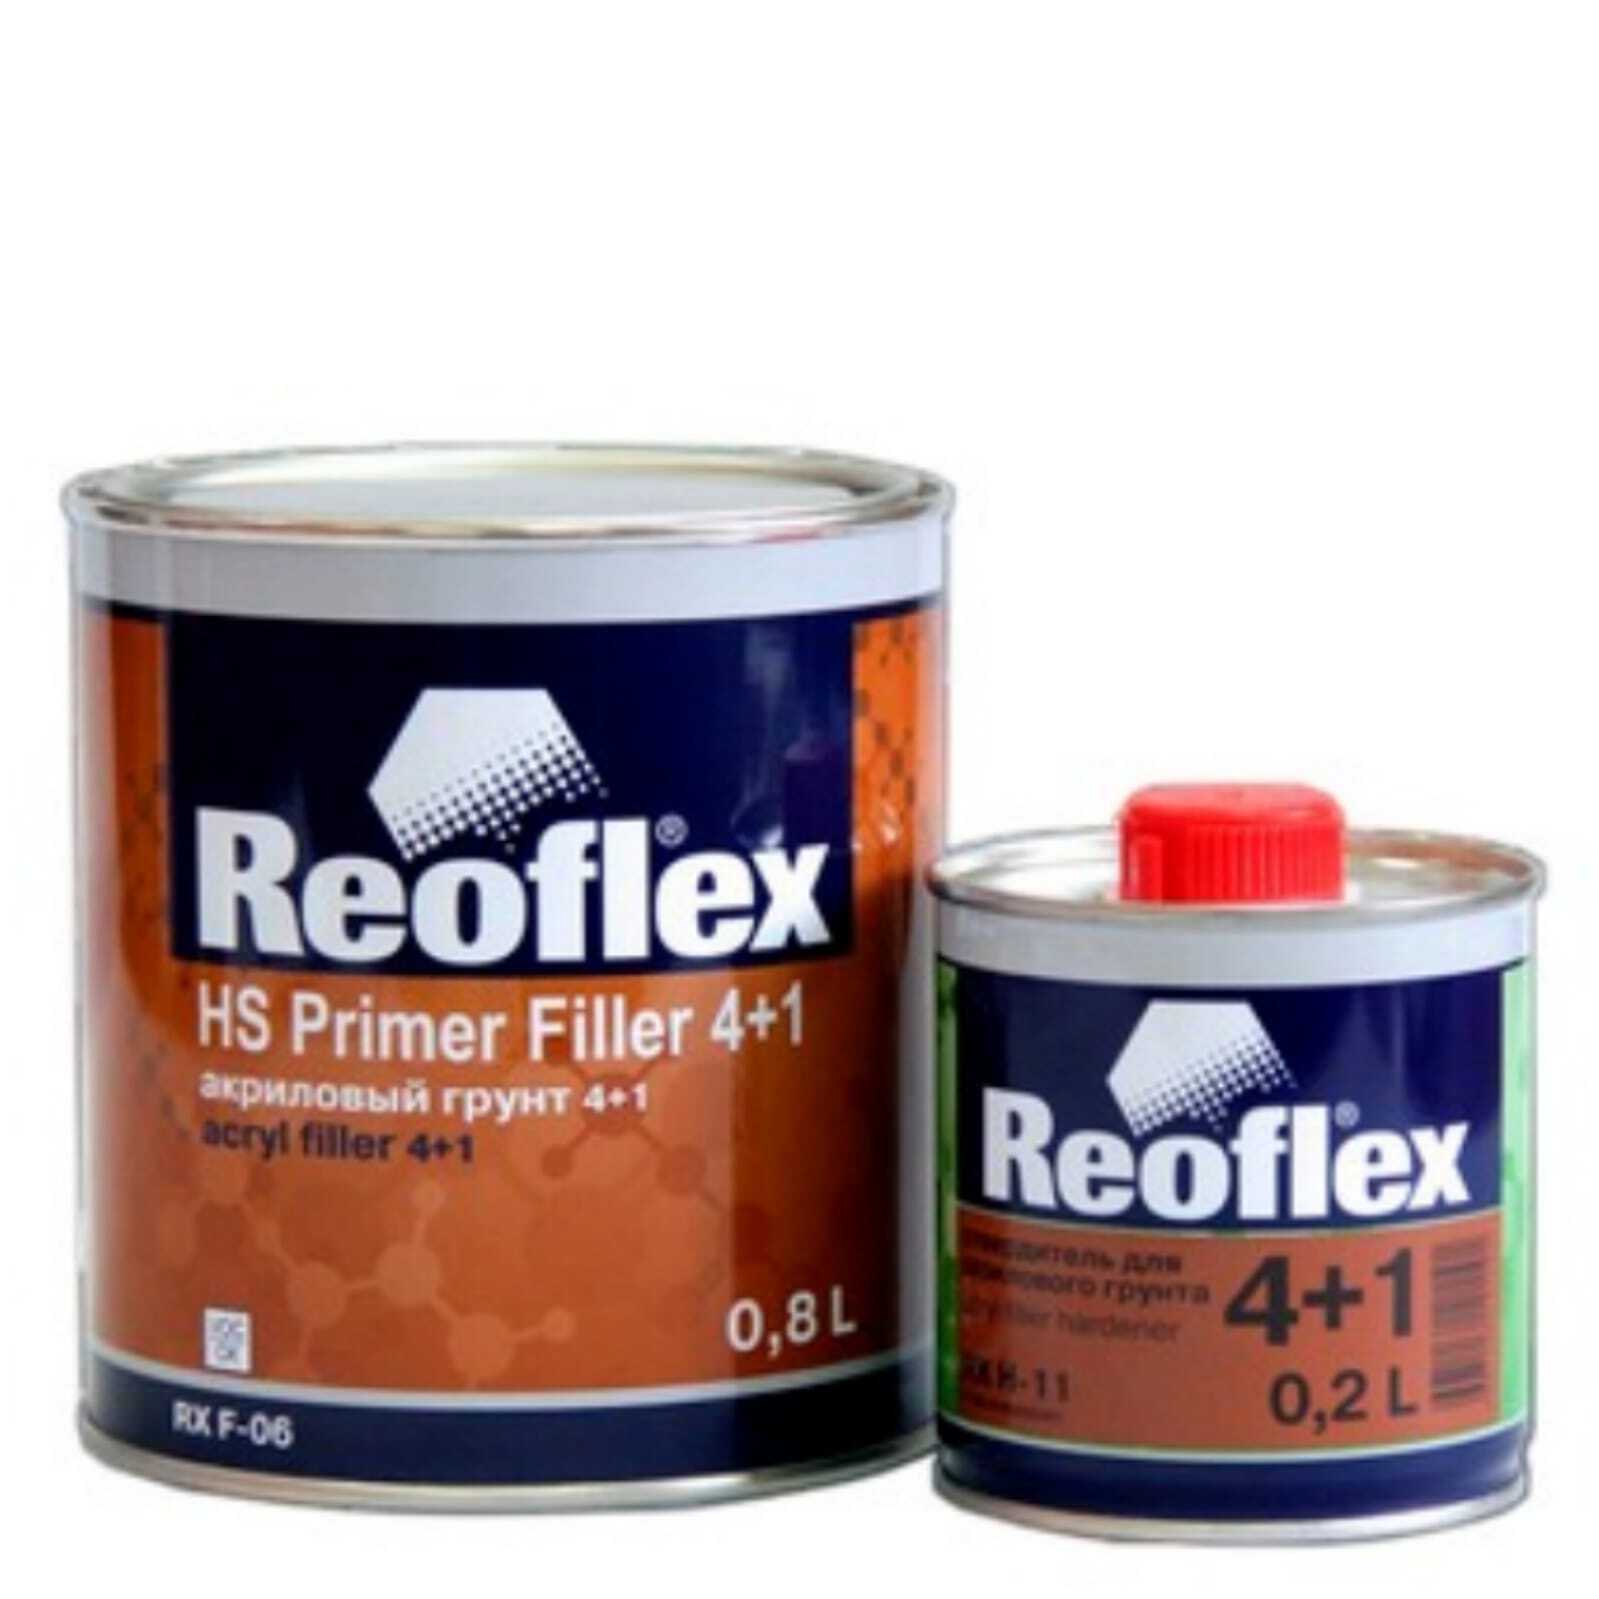 Праймер для авто. Reoflex грунт 4+1 2к (4л) + отвердитель (1л). Грунт Reoflex эпоксидный Эпипраймер (0,8+0,2). Reoflex грунт 4+1 2к акриловый (4,0л) + отвердитель (1,0л). Reoflex HS primer Filler 4+1 акриловый грунт 0.8l.